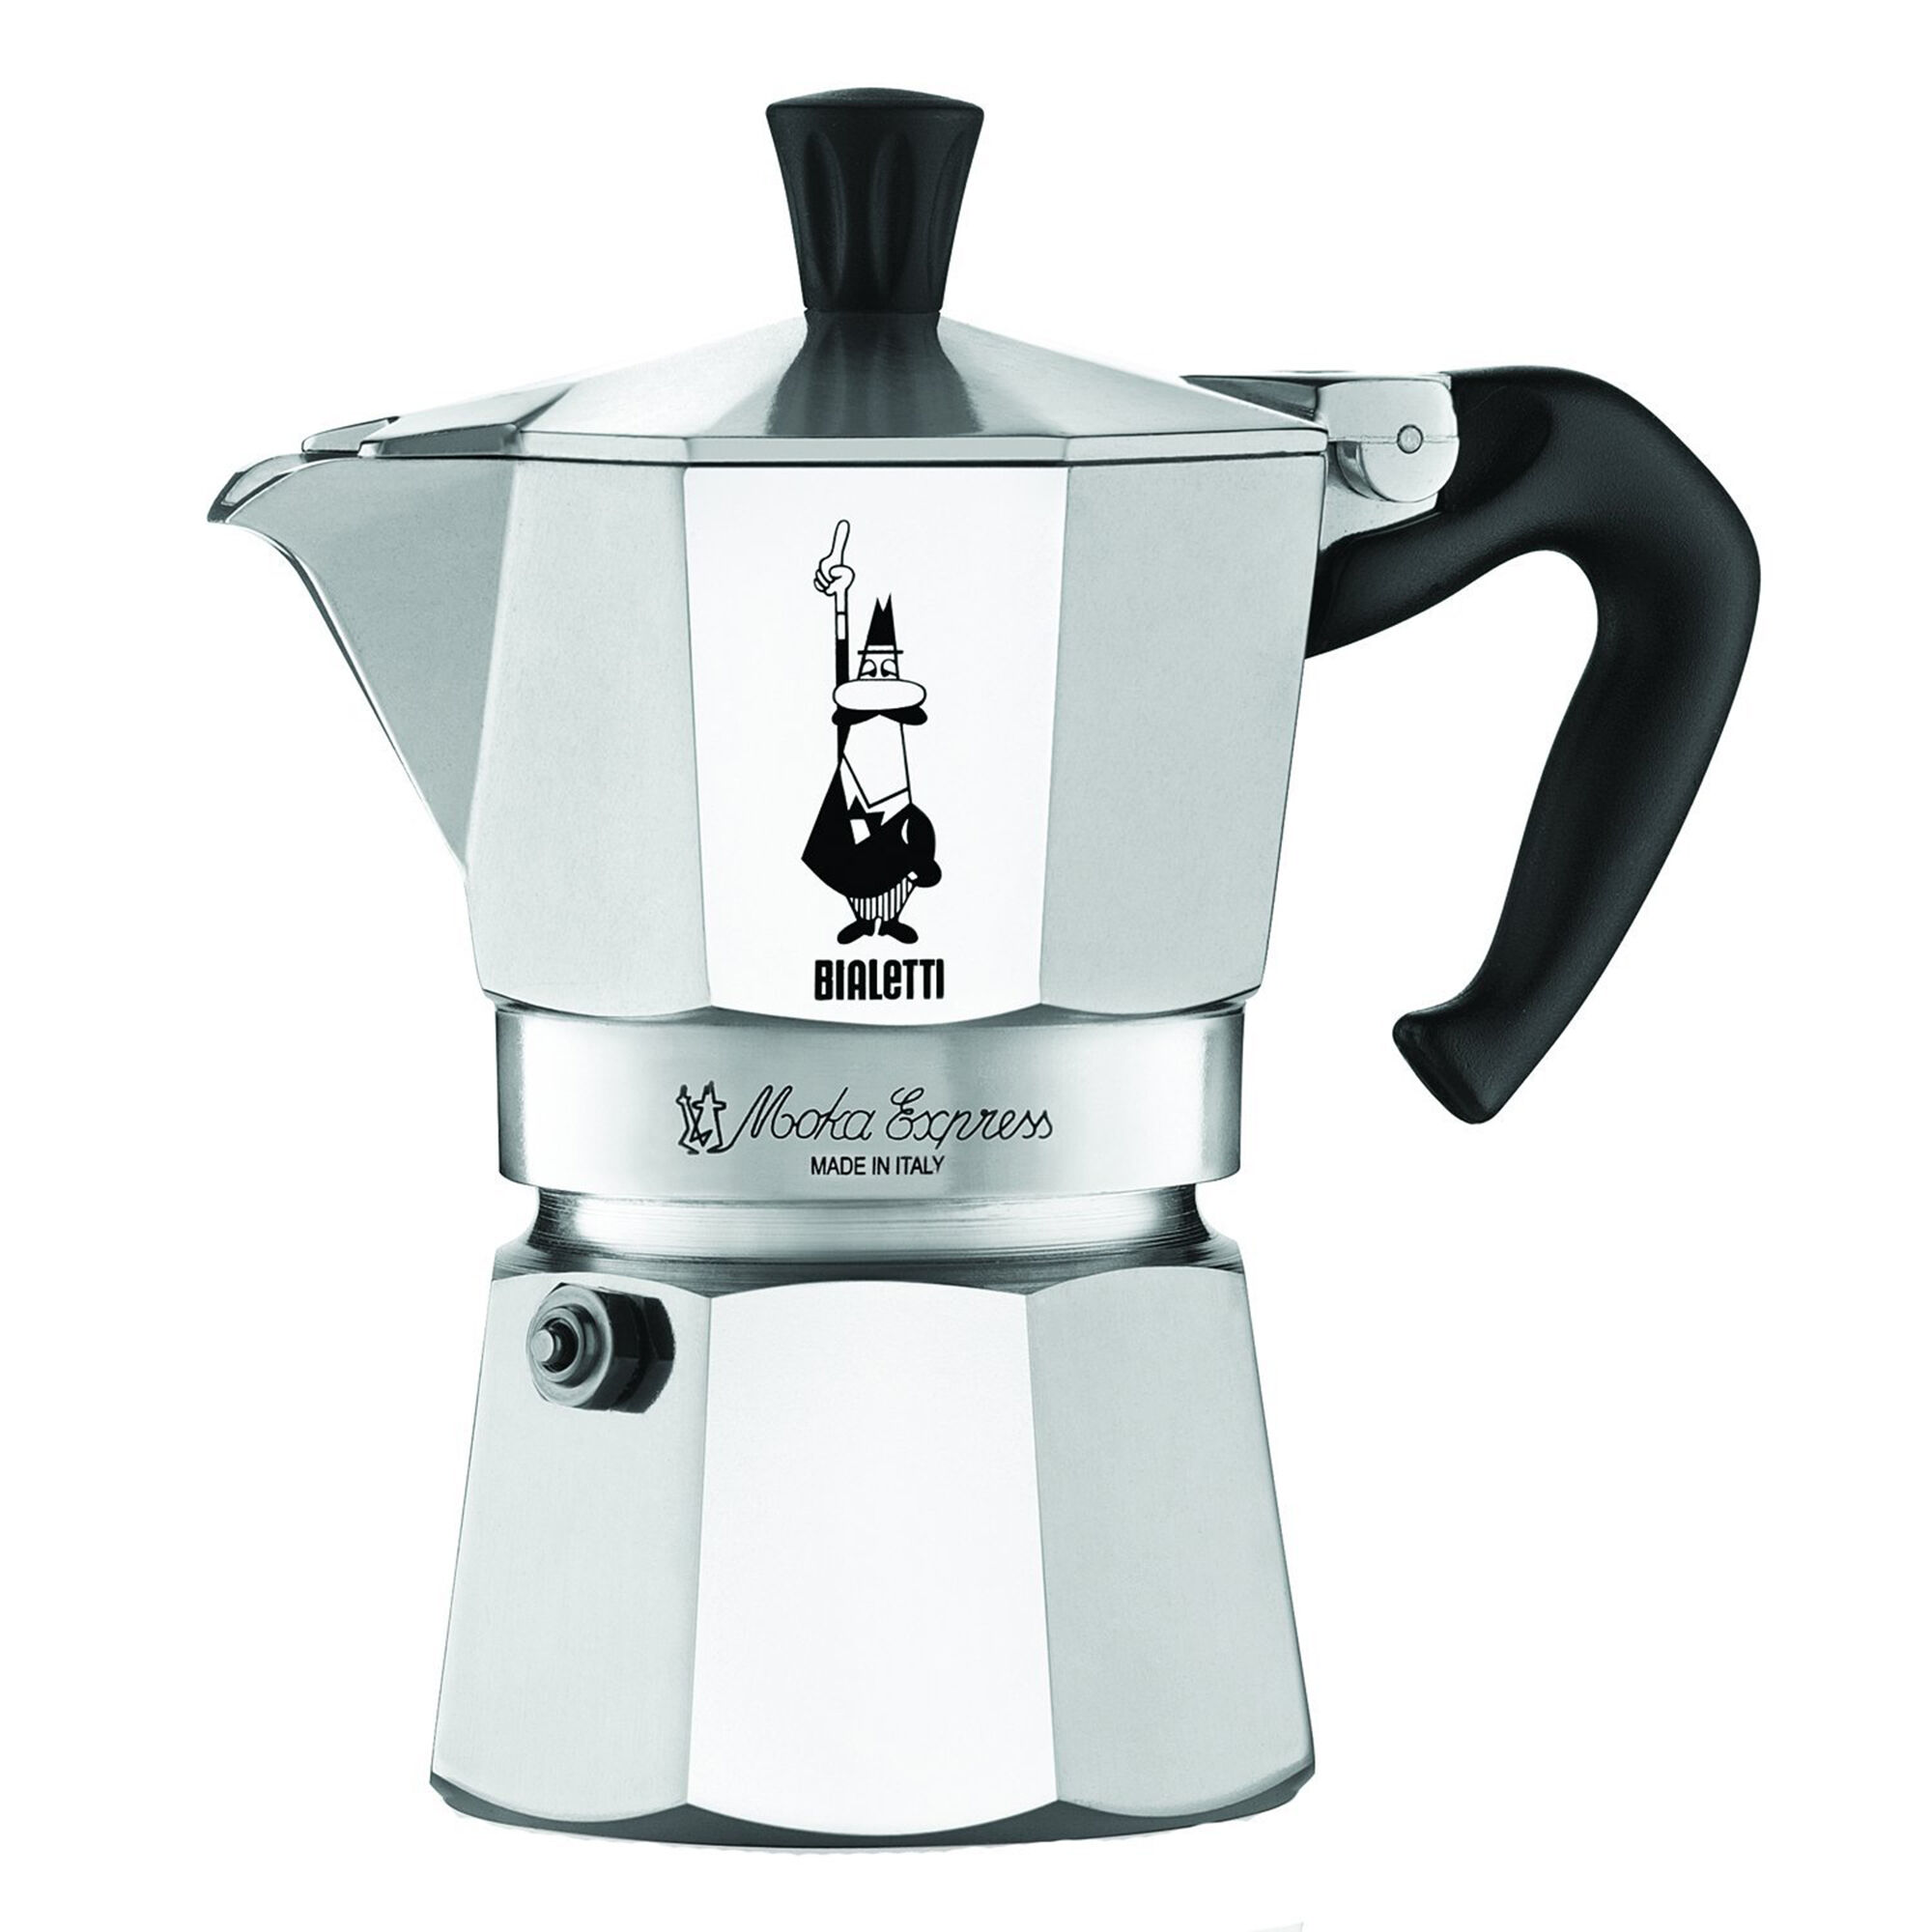 bialetti espresso maker 2 cup